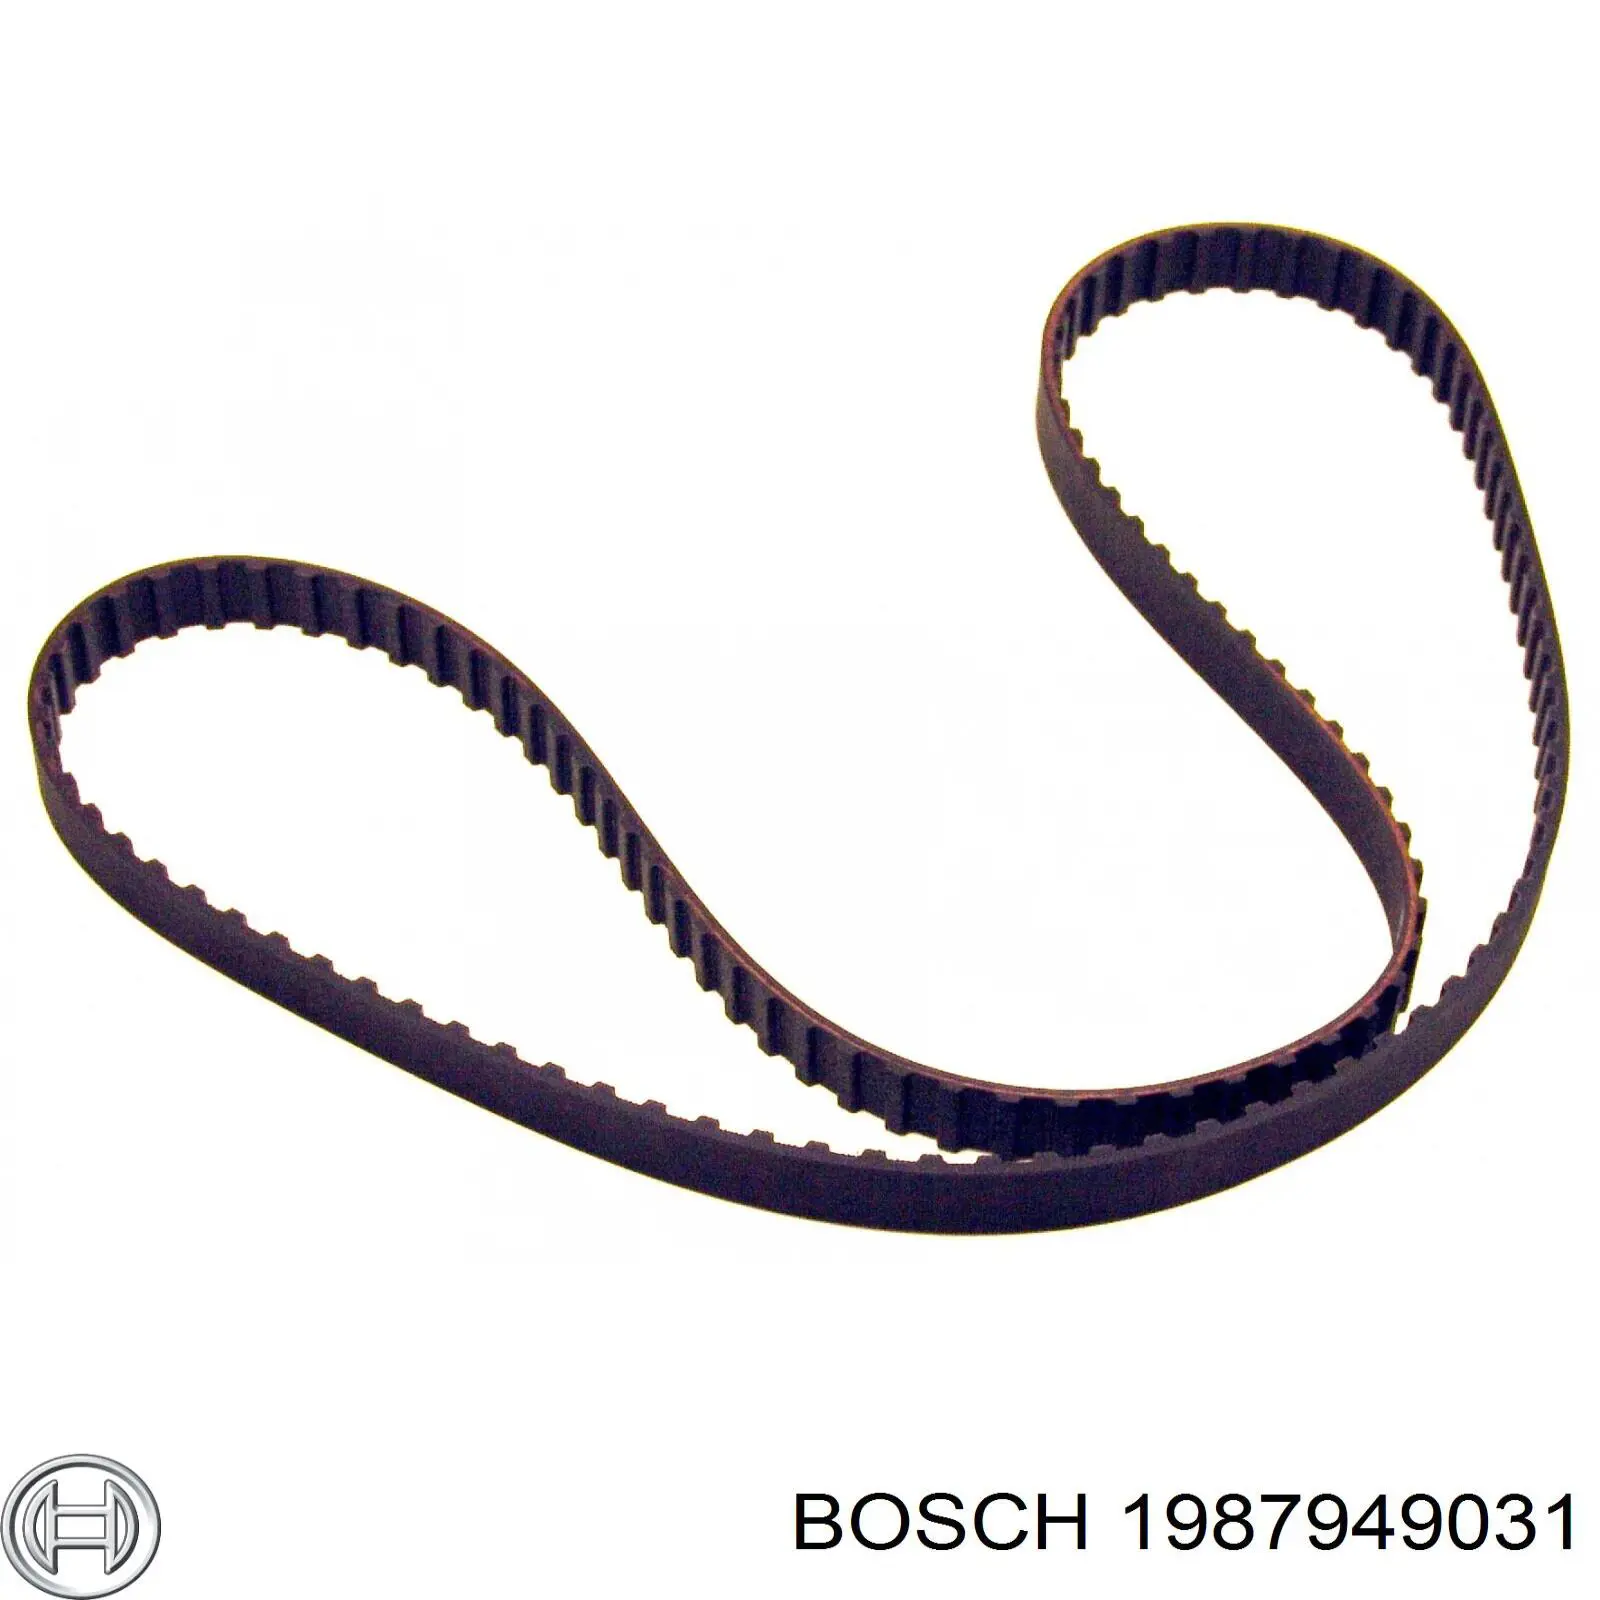 1987949031 Bosch correa distribucion